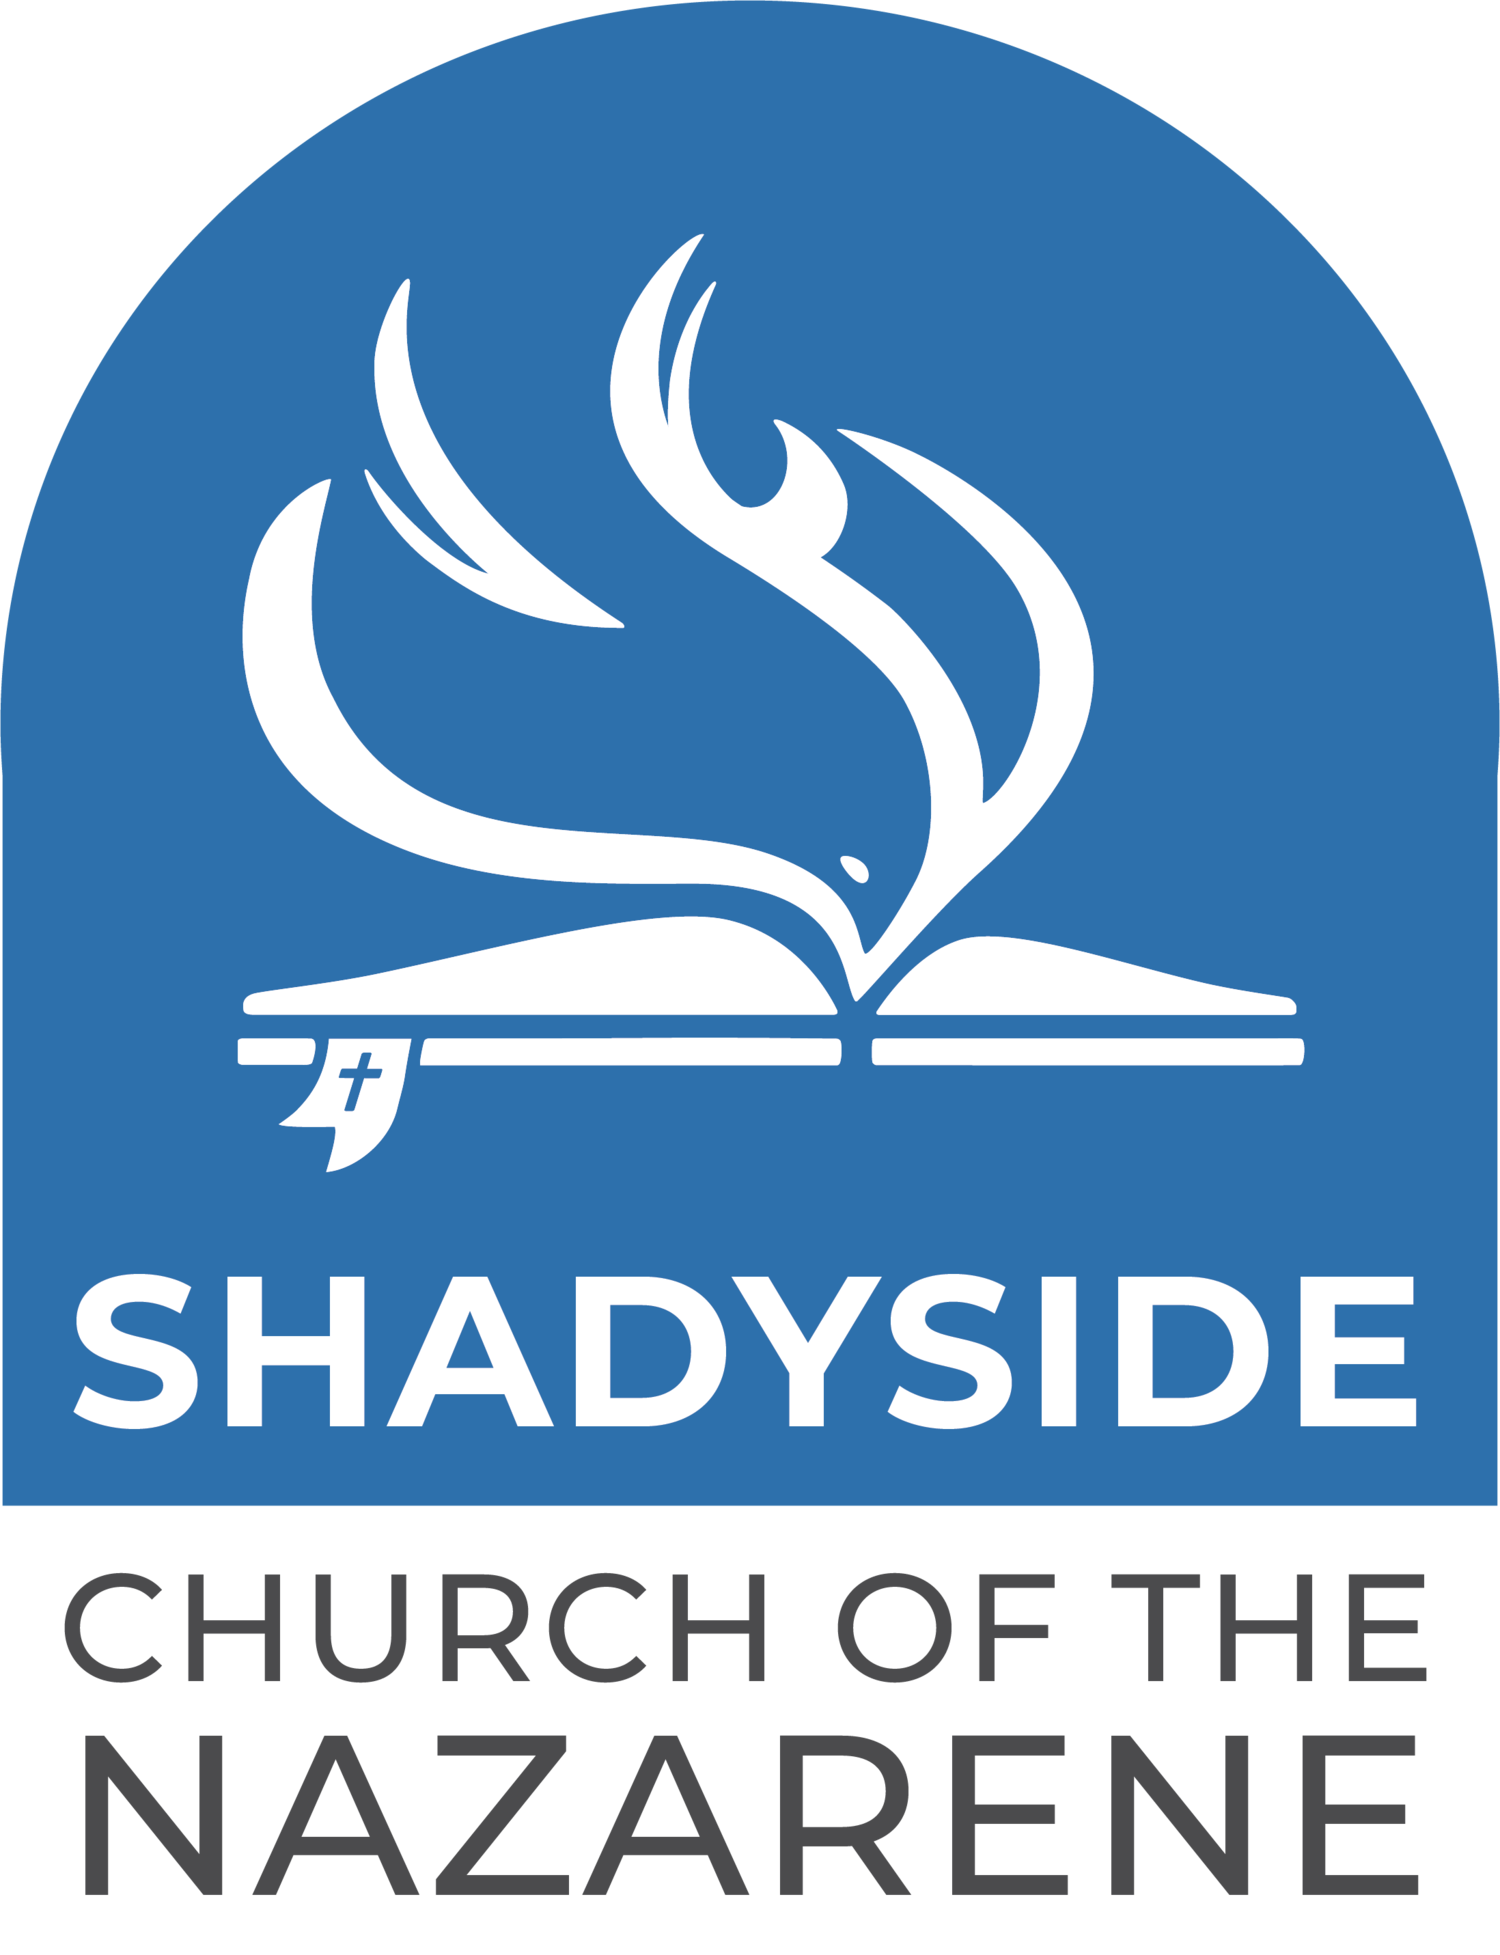 Shadyside Nazarene Church